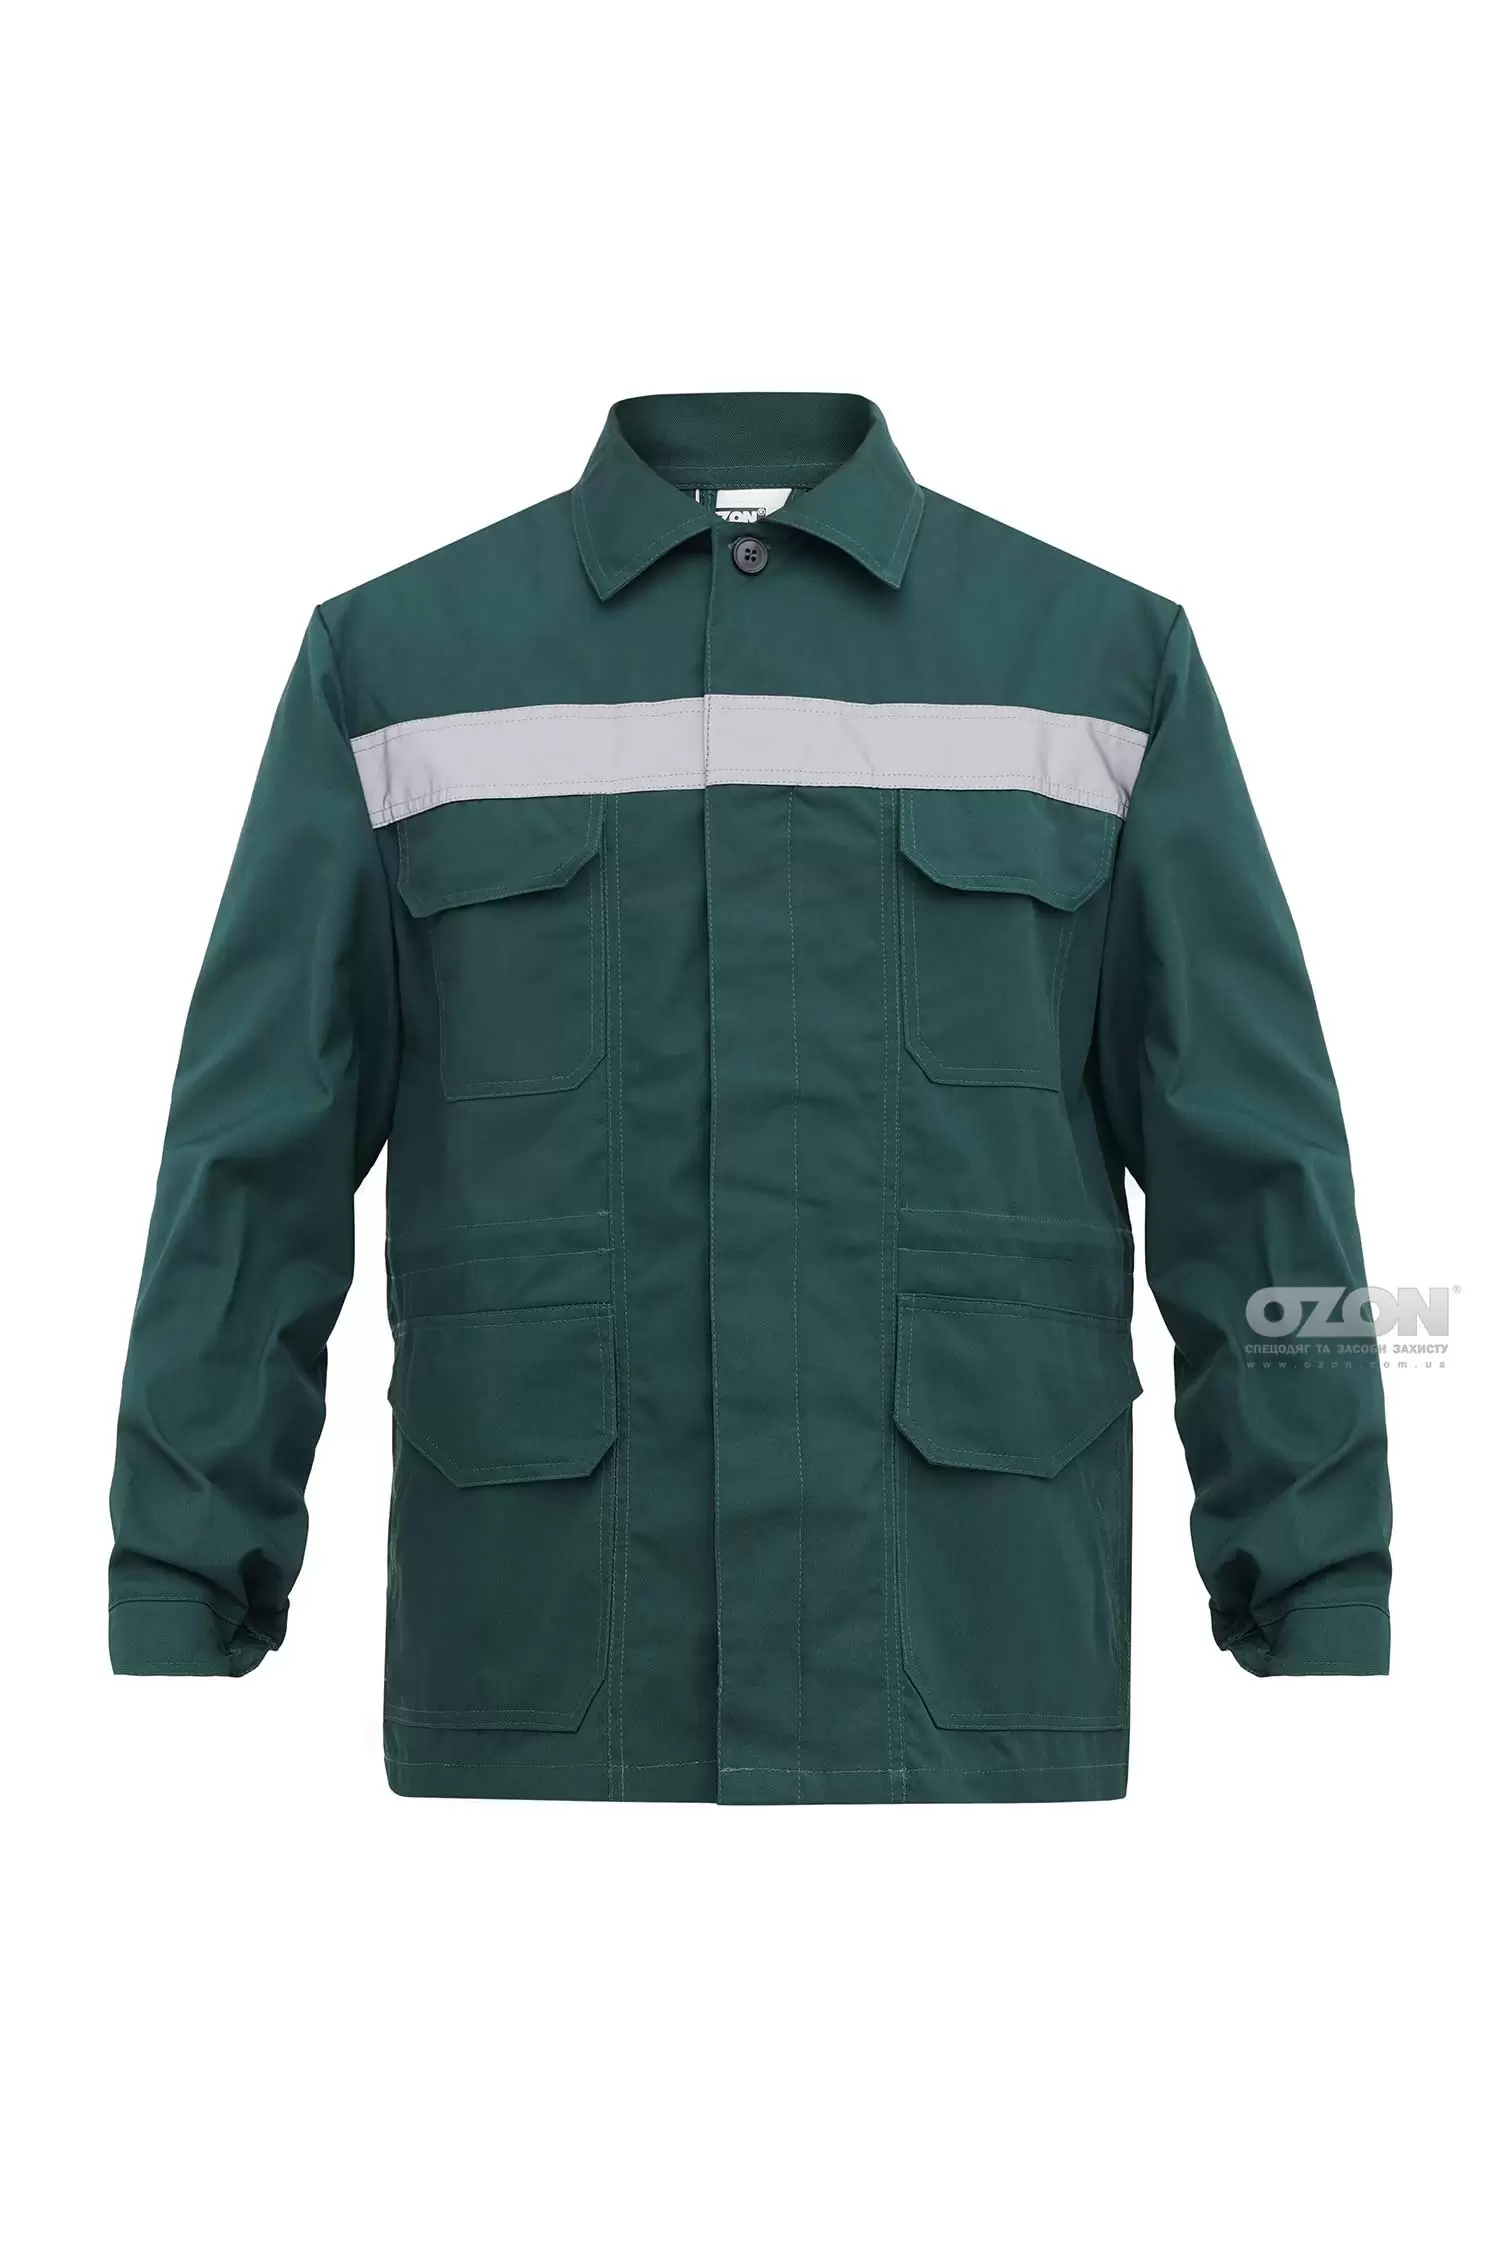 Куртка робоча Універсал СПС К5, зелений - Фото 1